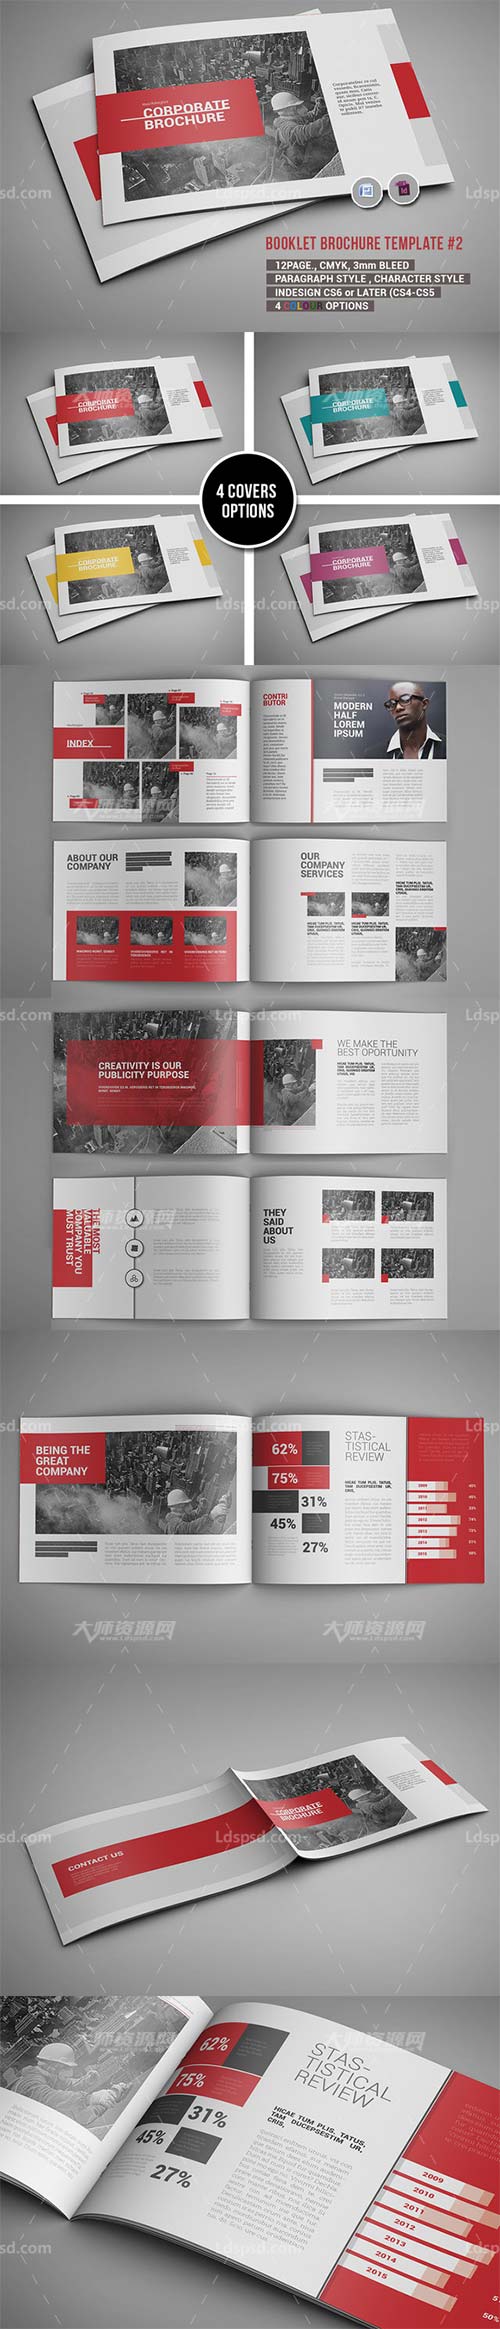 Booklet Brochure Template #2,indesign模板－企业宣传手册(12页/横版/4色)